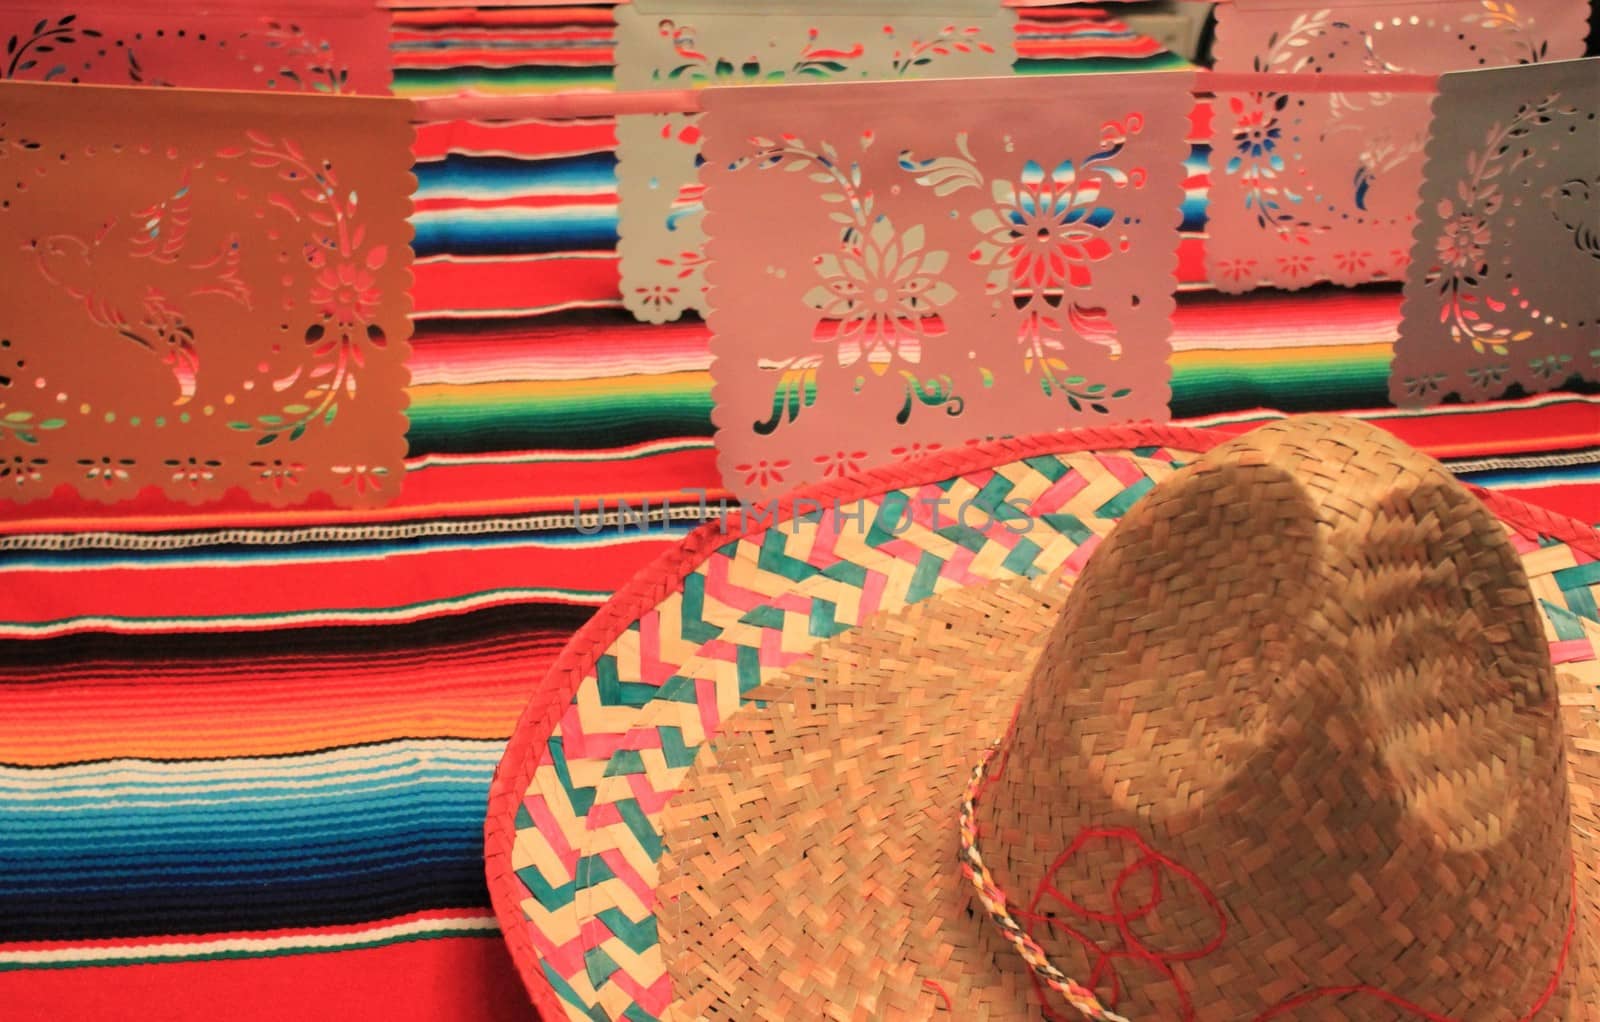 Mexico poncho sombrero background fiesta cinco de mayo decoration bunting flags